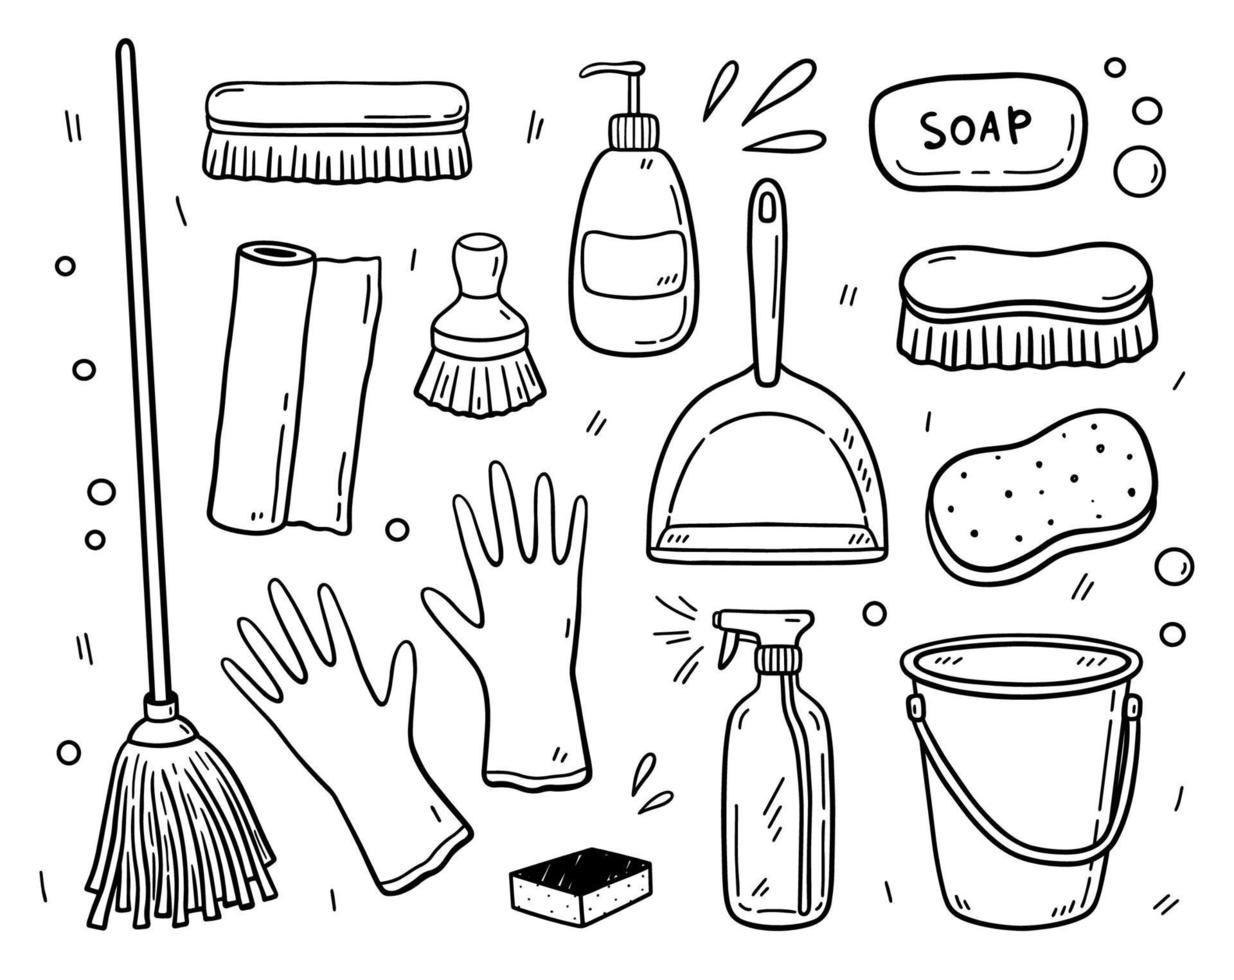 doodle set items voor het reinigen - dweil, borstels, wasmiddelen, emmer, schep, rubberen handschoenen, zeep, sponzen, papieren handdoeken. arbeidsmiddelen om het huis schoon te houden. vector handgetekende illustratie.